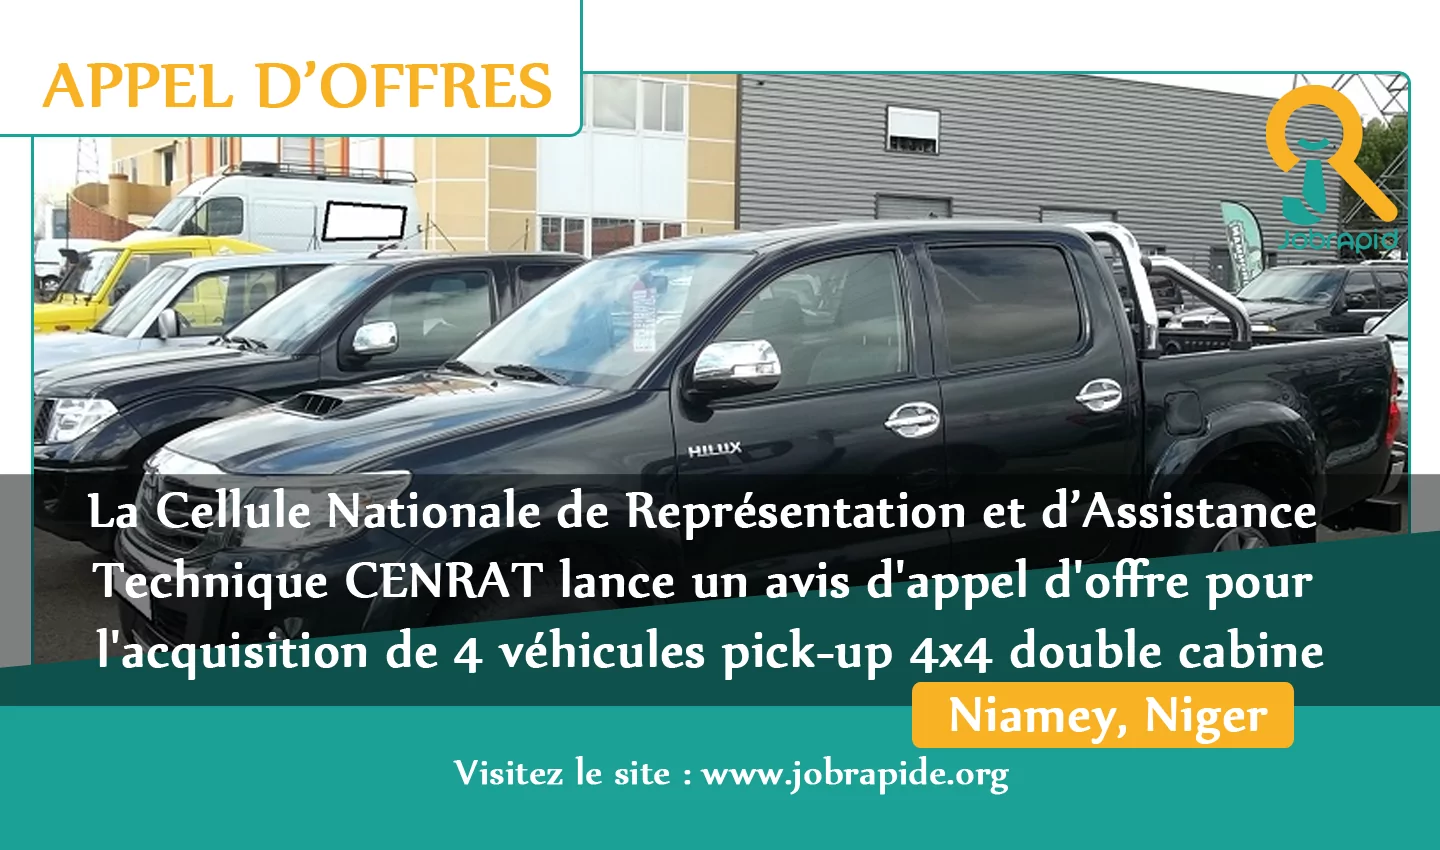 La Cellule Nationale de Représentation et d’Assistance Technique CENRAT lance un avis d’appel d’offre pour l’acquisition de 4 véhicules pick-up 4×4 double cabine, Niamey, Niger